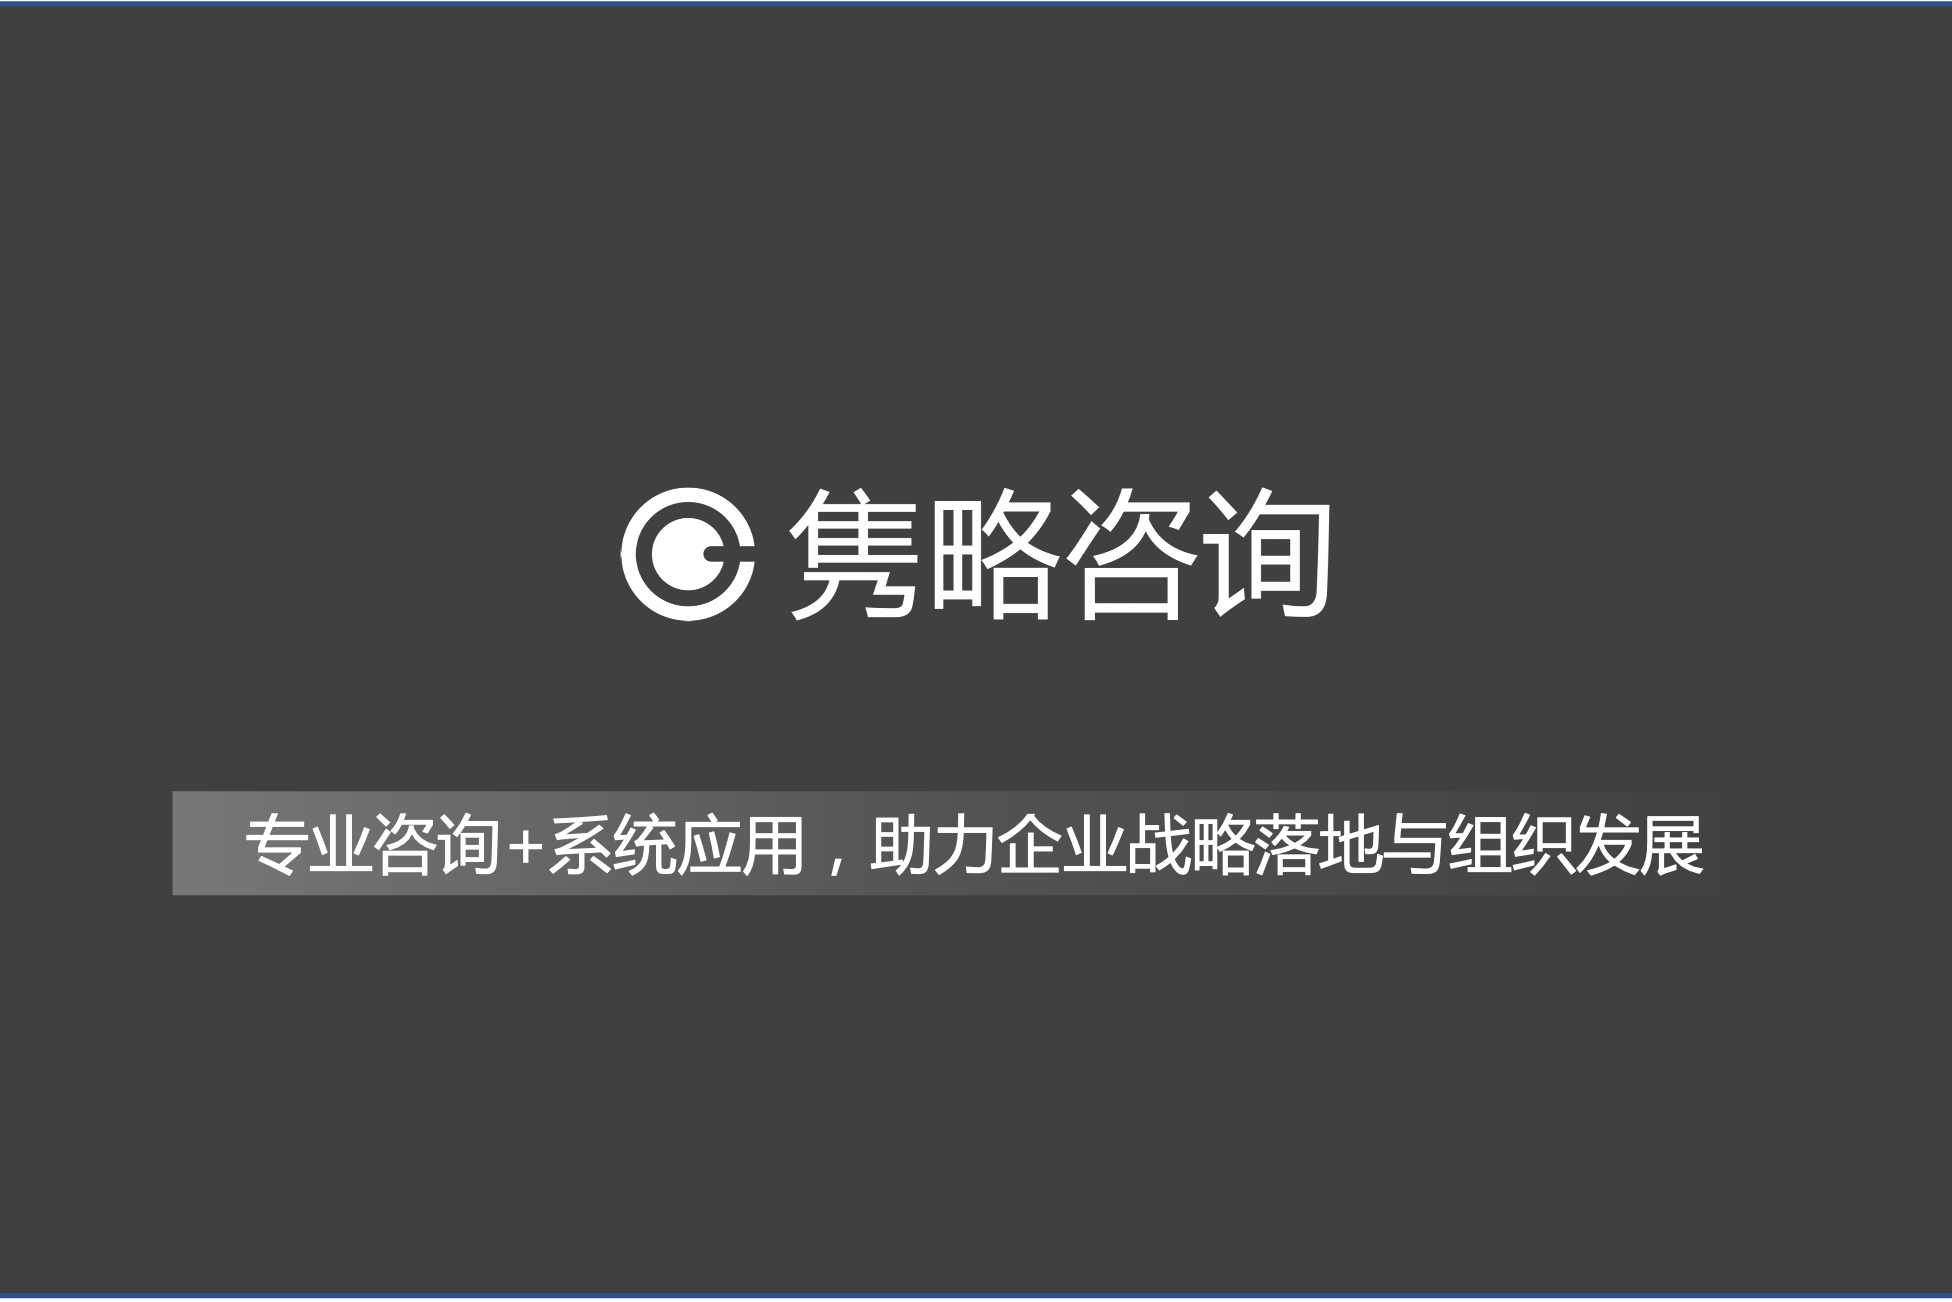 上海私人调查侦探公司_克丽丝汀迪奥商业(上海)有限公司 公司id_上海商业调查公司